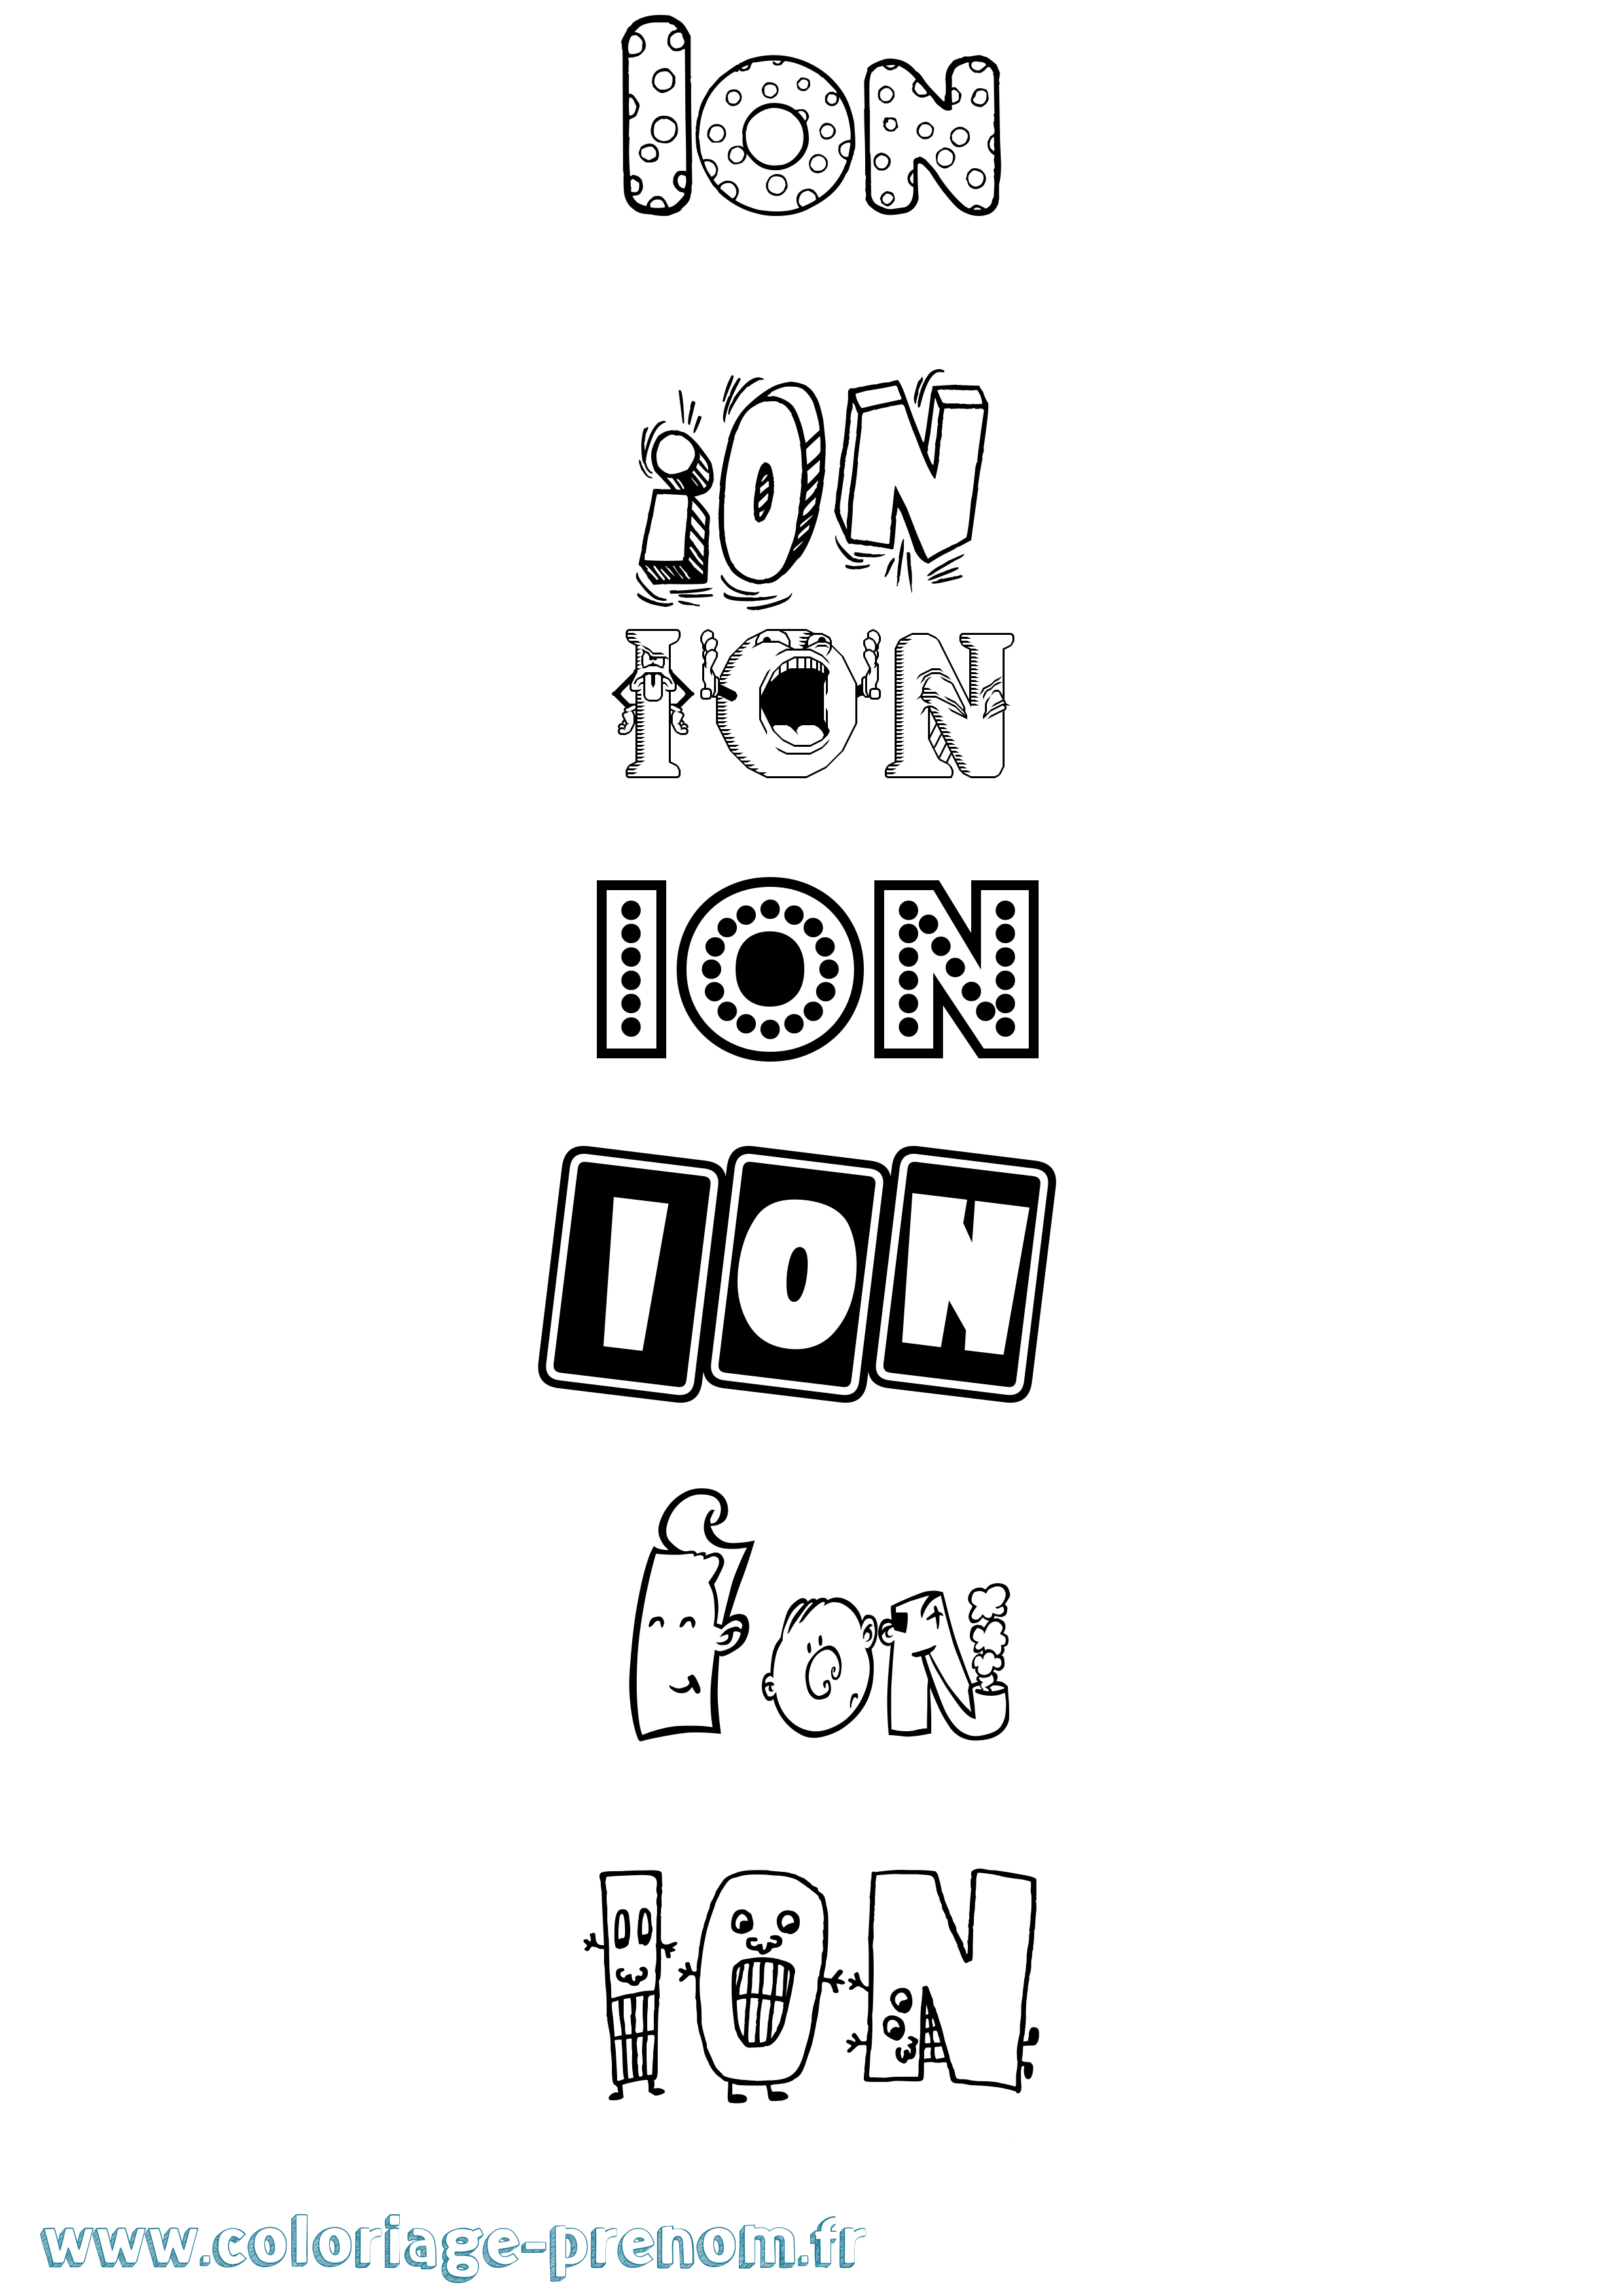 Coloriage prénom Ion Fun